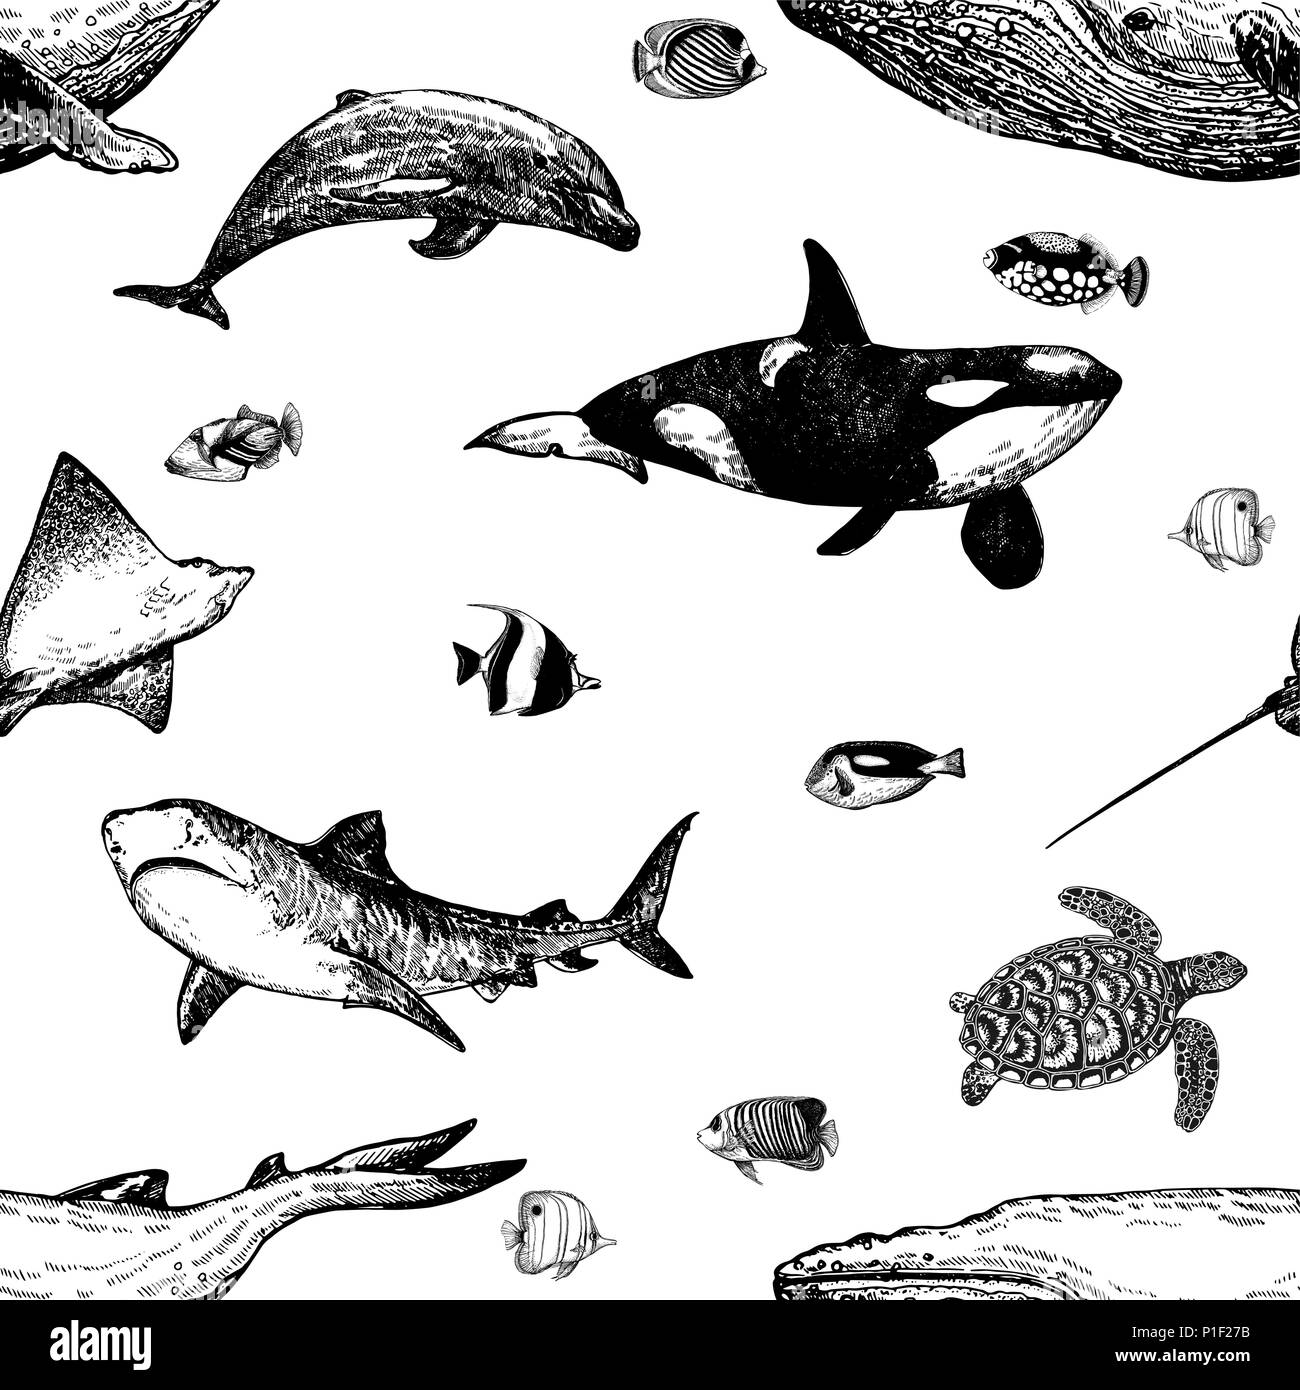 Trama perfecta de estilo boceto dibujados a mano de animales marinos y peces tropicales aislado sobre fondo blanco. Ilustración vectorial. Ilustración del Vector